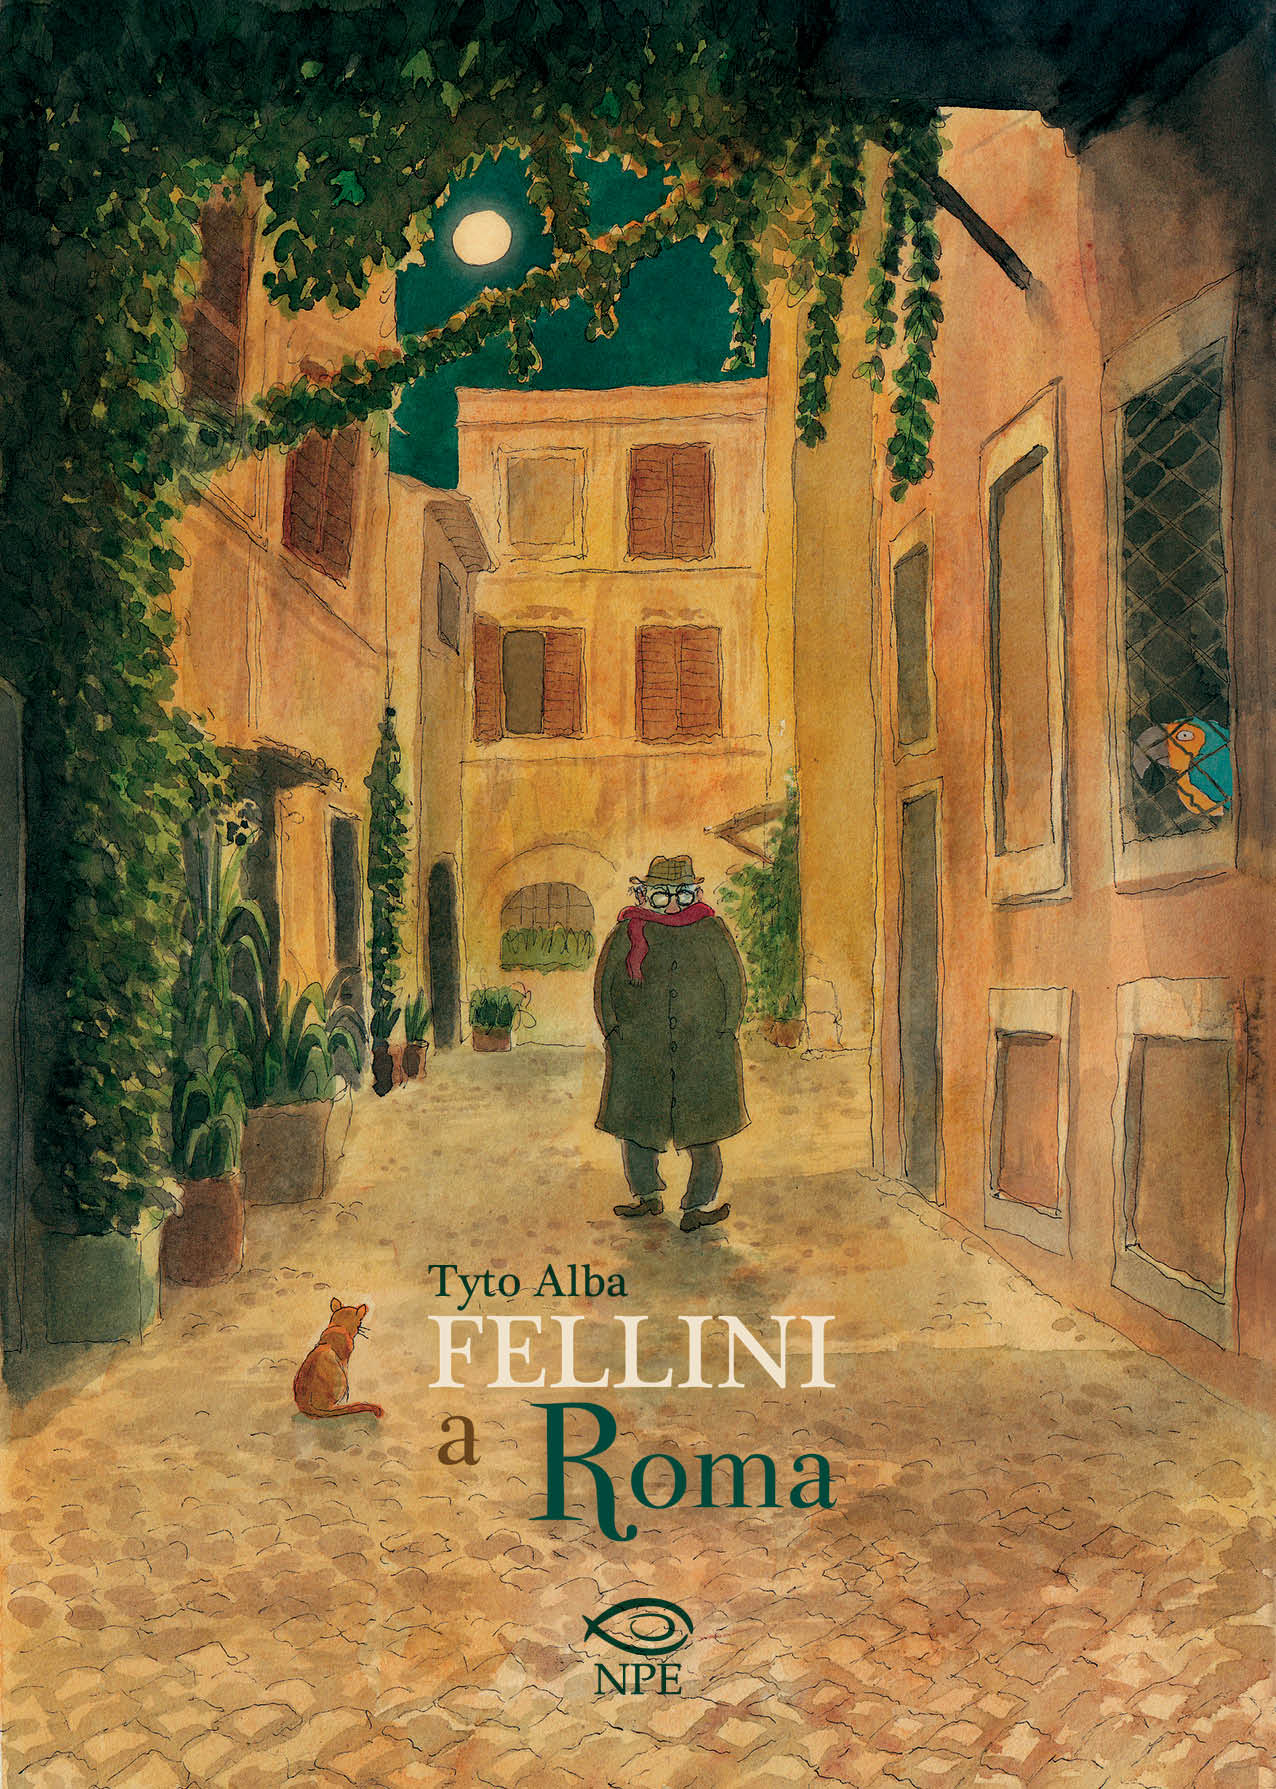 Fellini a Roma: il graphic novel di Tyto Alba dedicato al grande regista